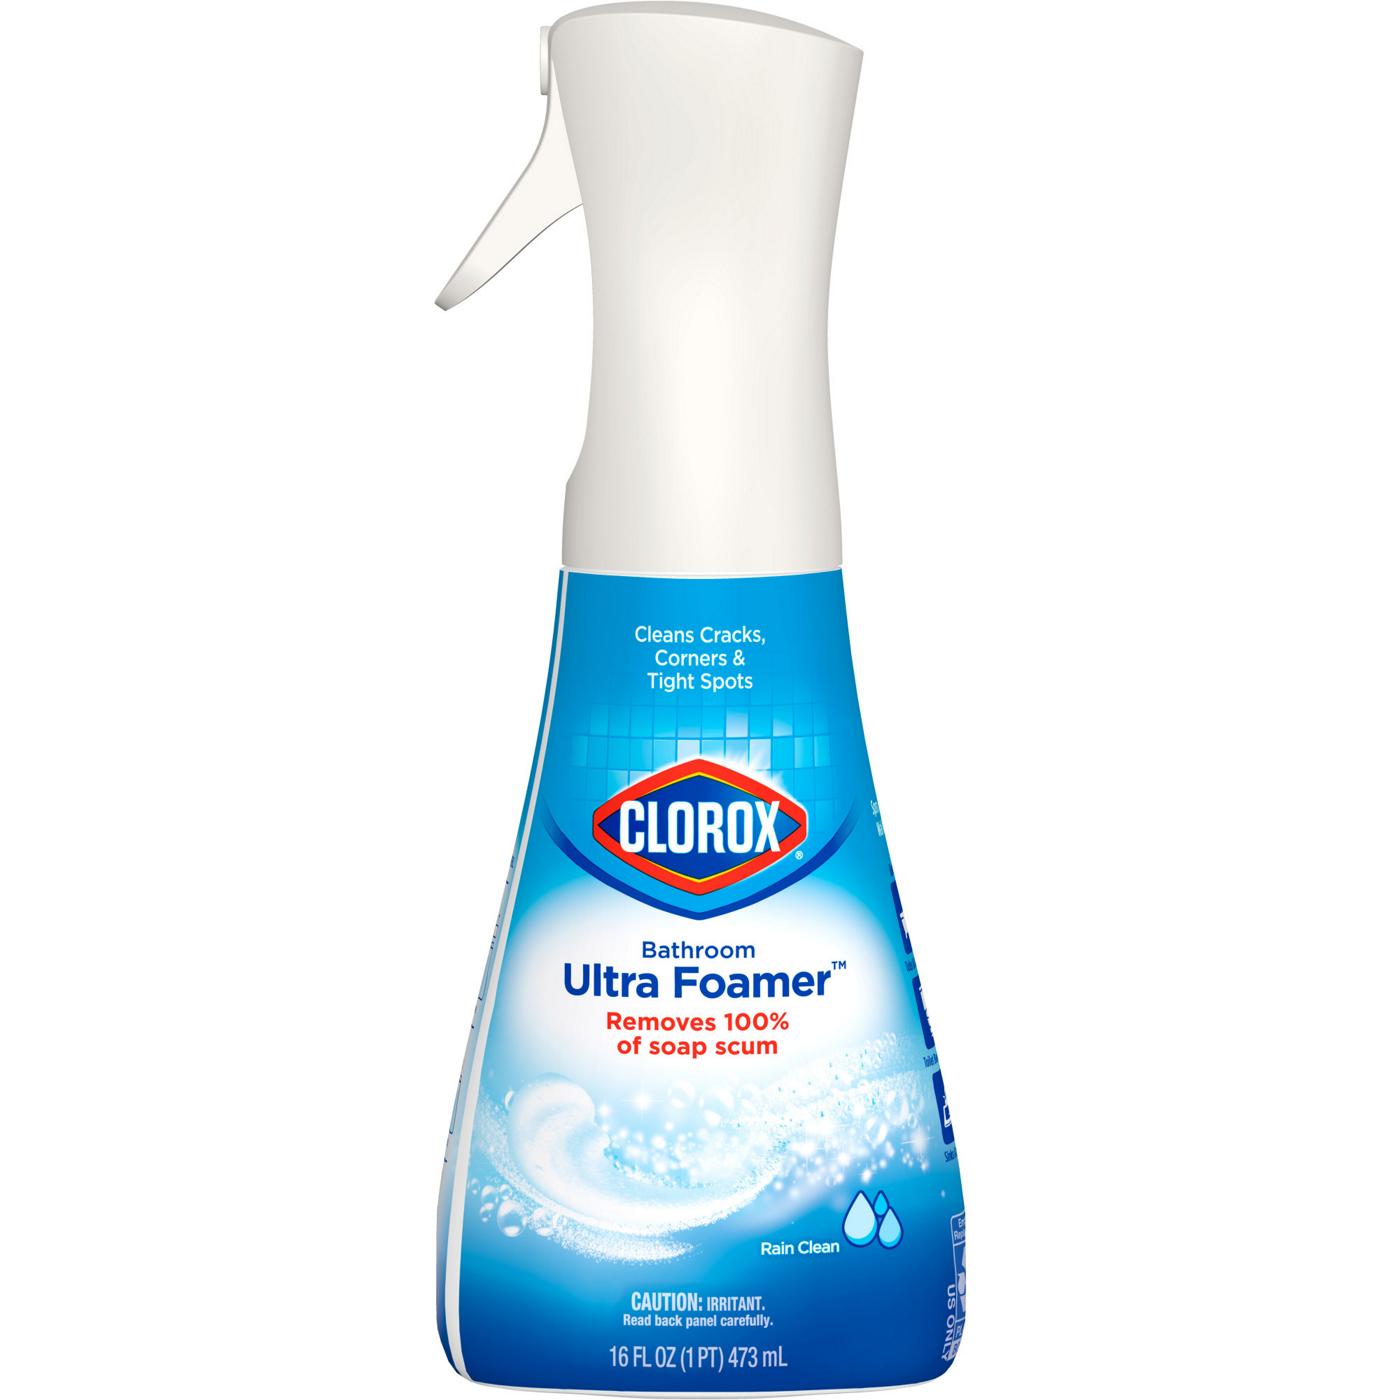 Clorox Bathroom Ultra Foamer Cleaner - Rain Clean; image 1 of 11